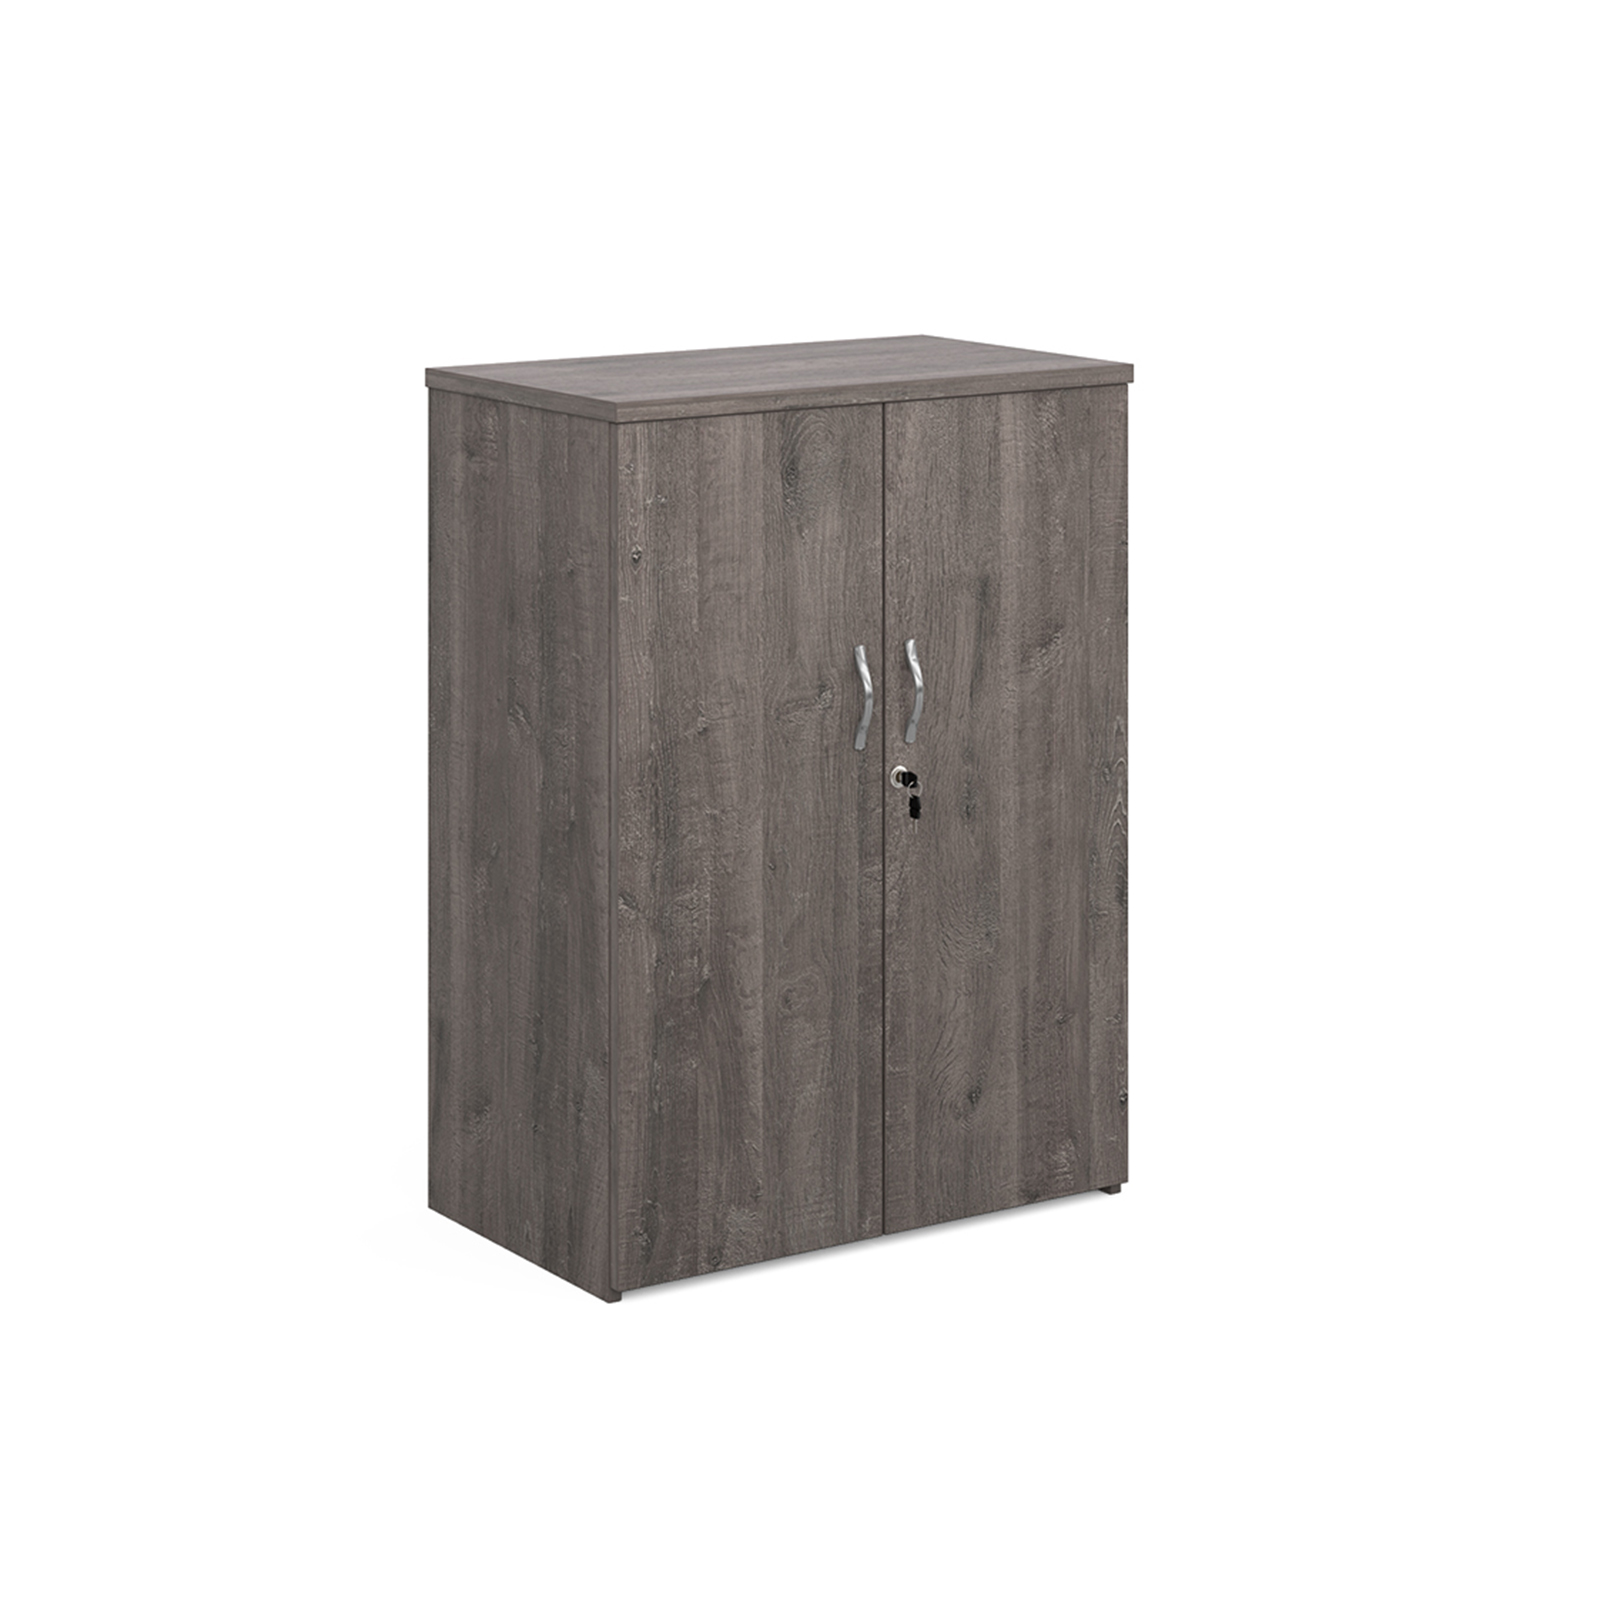 Universal double door cupboard 1090mm high with 2 shelves - grey oak